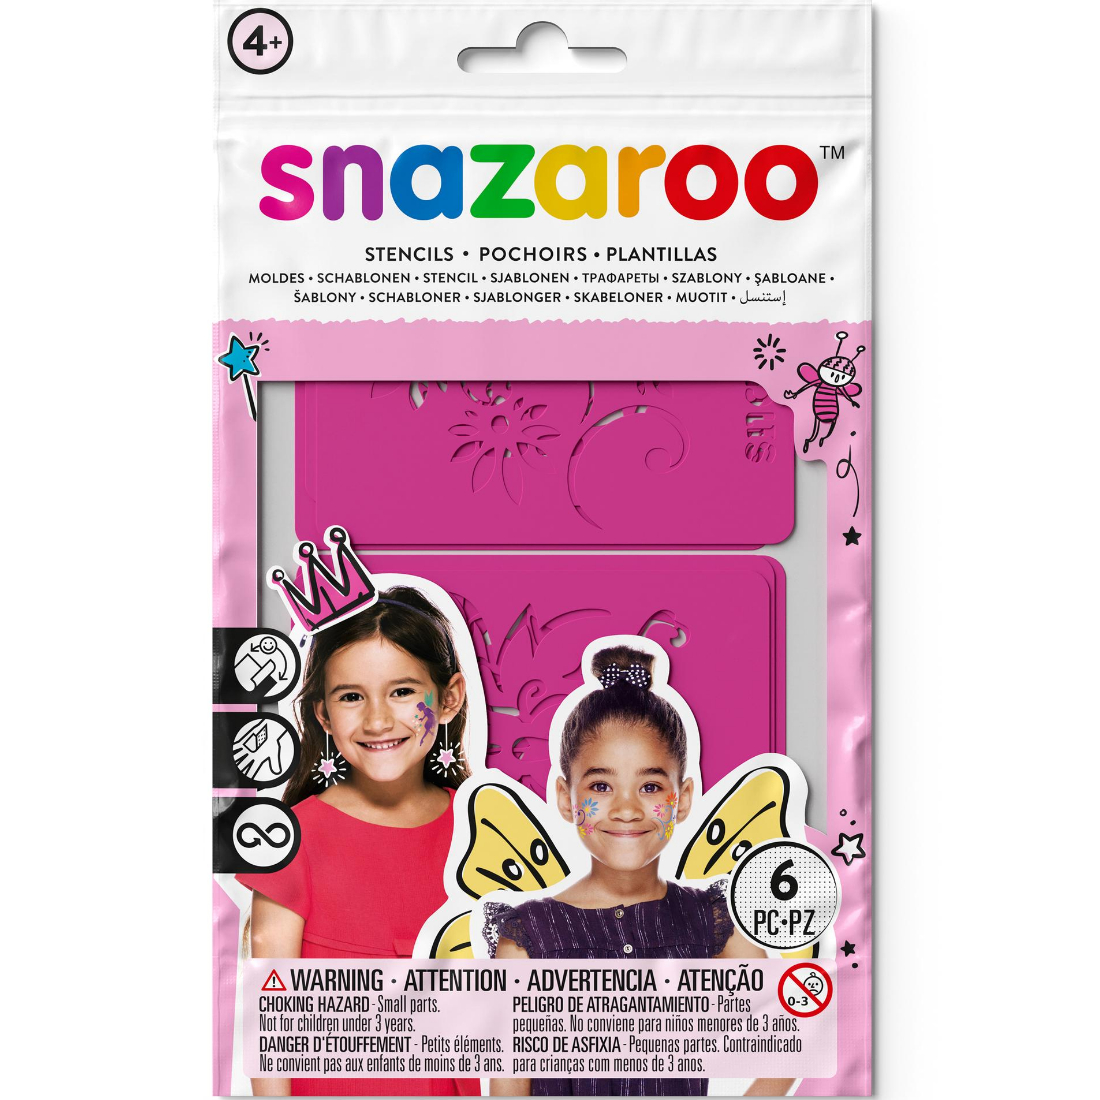 Stencils maquilhagem Fantasia menina com 6 unidades snazaroo.